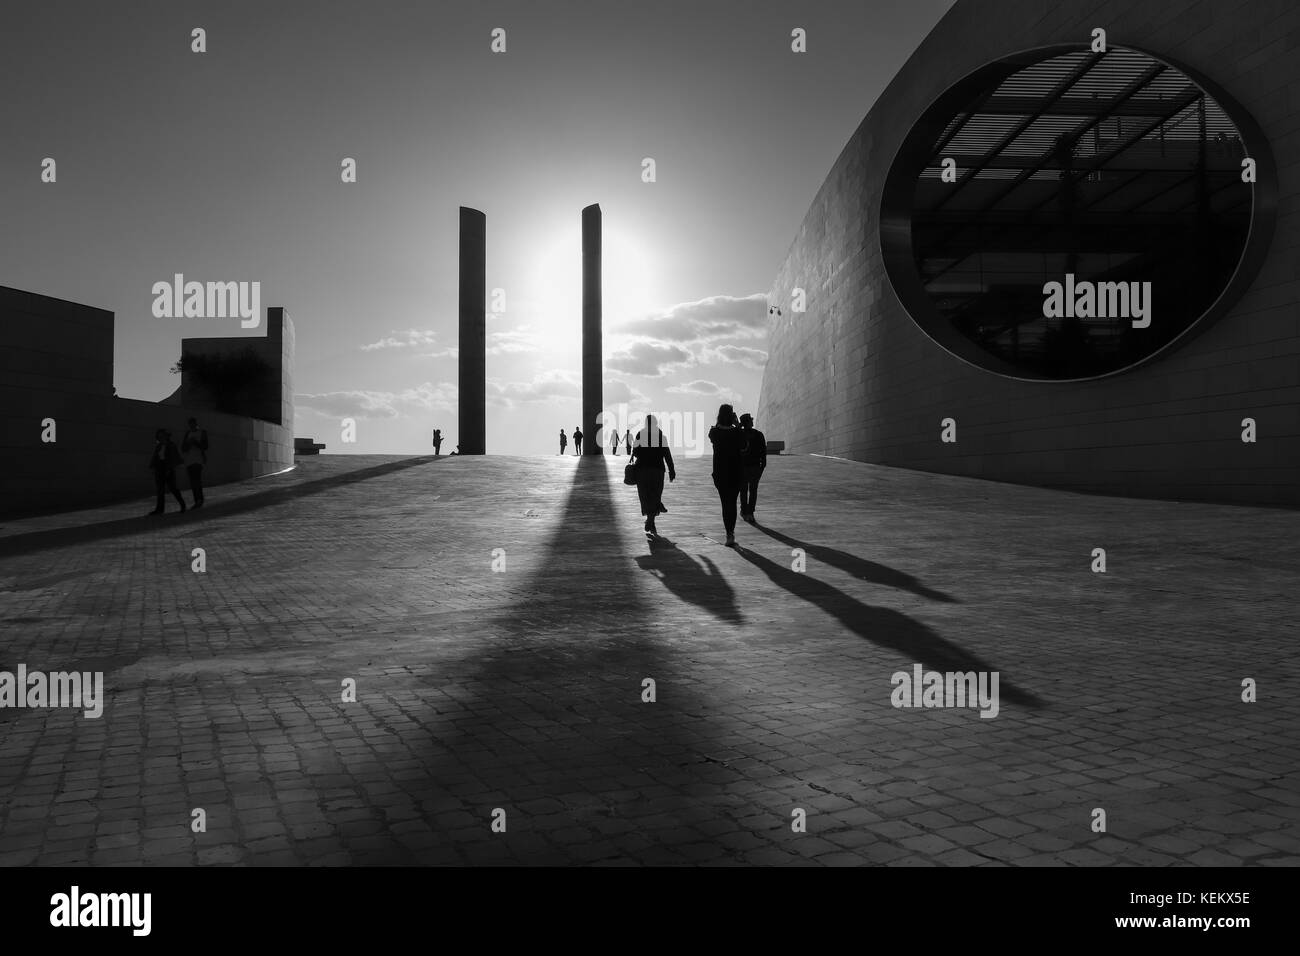 Persone silhouette al tramonto. Architettura in dettaglio il champalimaud foundation in Lisbona portogallo ottobre 2017 Foto Stock